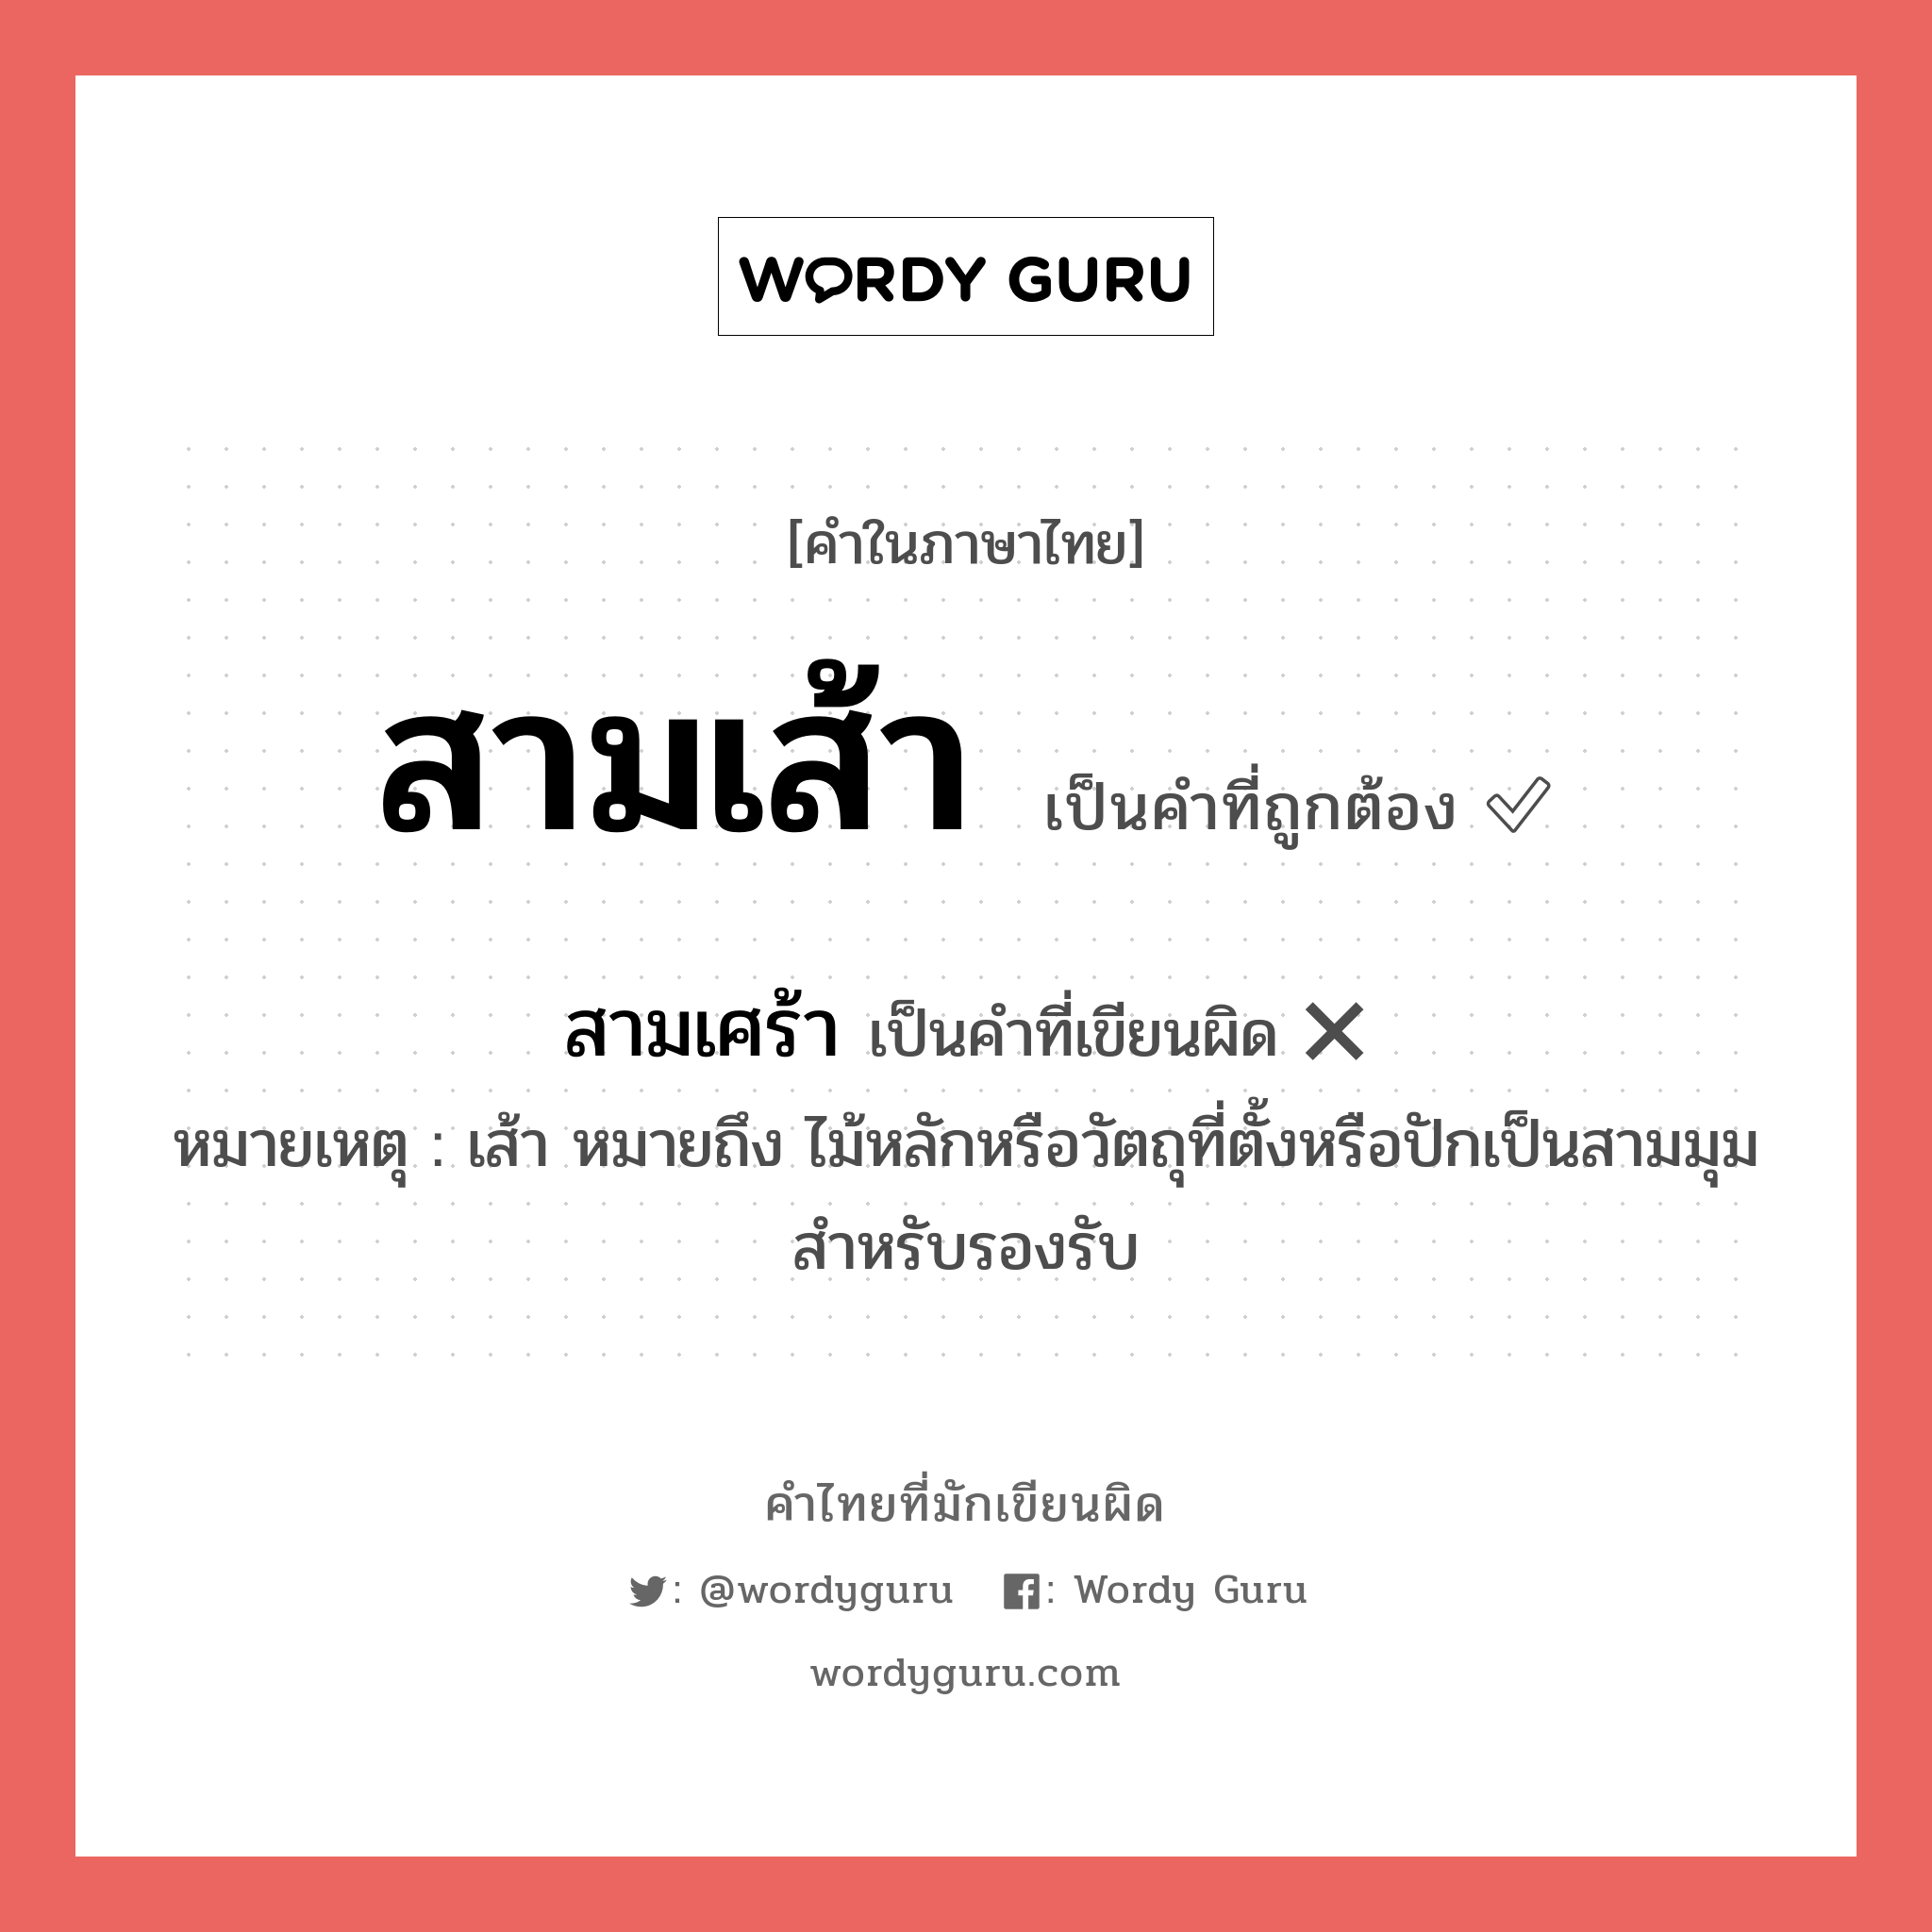 สามเส้า หรือ สามเศร้า คำไหนเขียนถูก?, คำในภาษาไทยที่มักเขียนผิด สามเส้า คำที่ผิด ❌ สามเศร้า หมายเหตุ เส้า หมายถึง ไม้หลักหรือวัตถุที่ตั้งหรือปักเป็นสามมุมสำหรับรองรับ